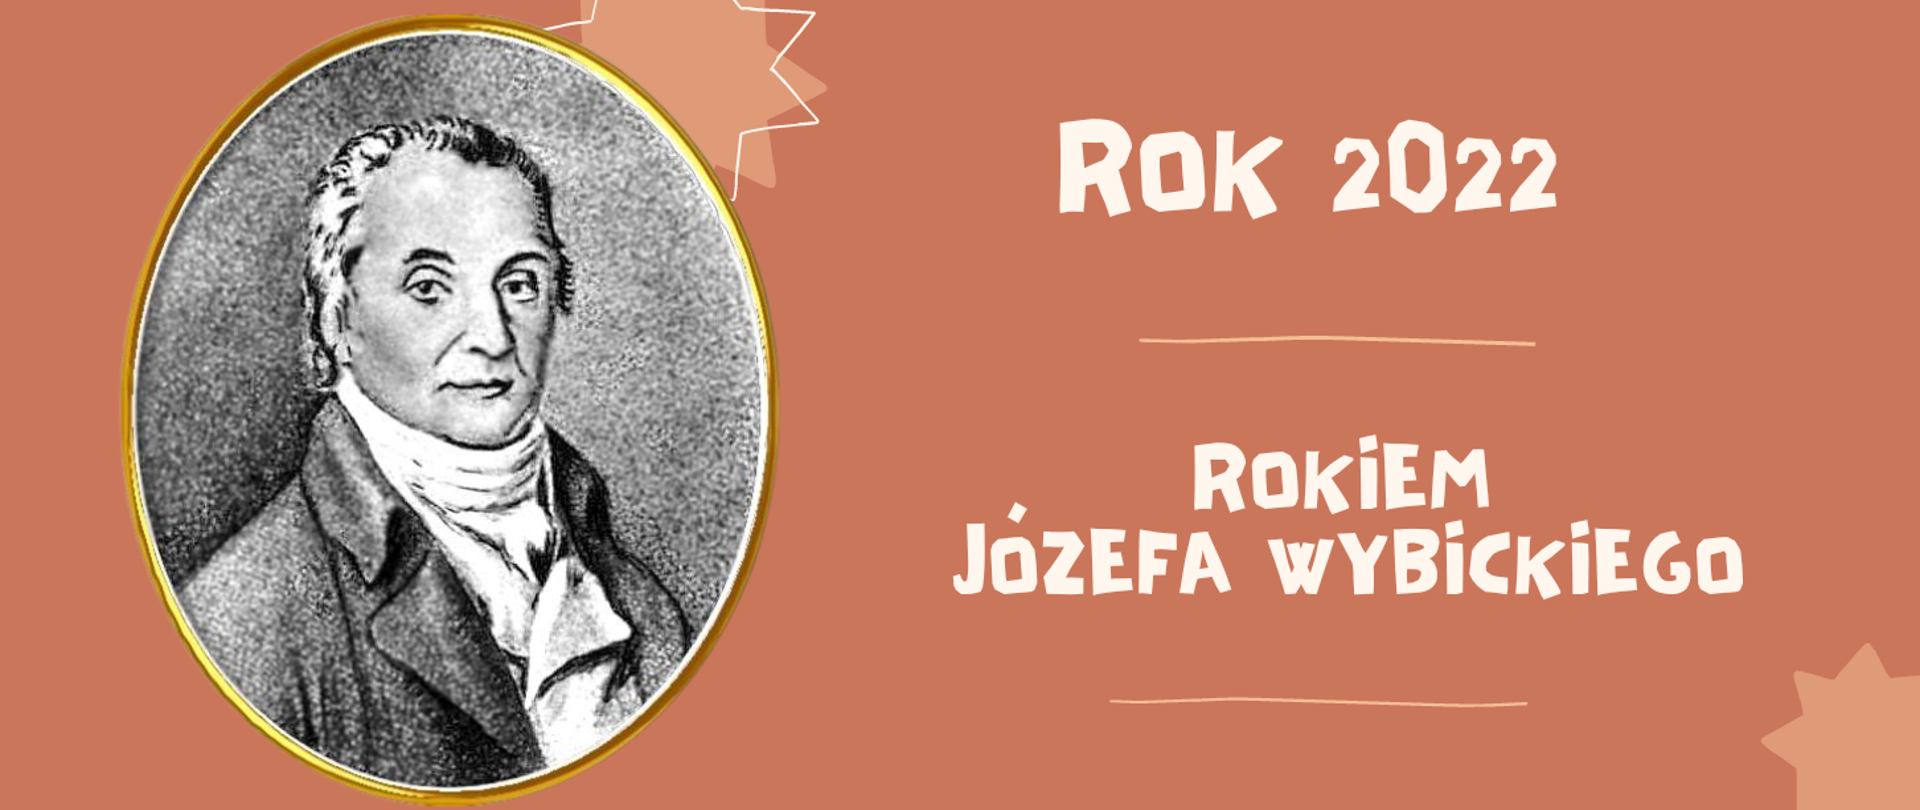 Na brązowym tle z lewej strony czarno- białe zdjęcie Józefa Wybickiego w kształcie rozciągniętego koła. Z prawej strony biały napis "Rok 2022 Rokiem Józefa Wybickiego".